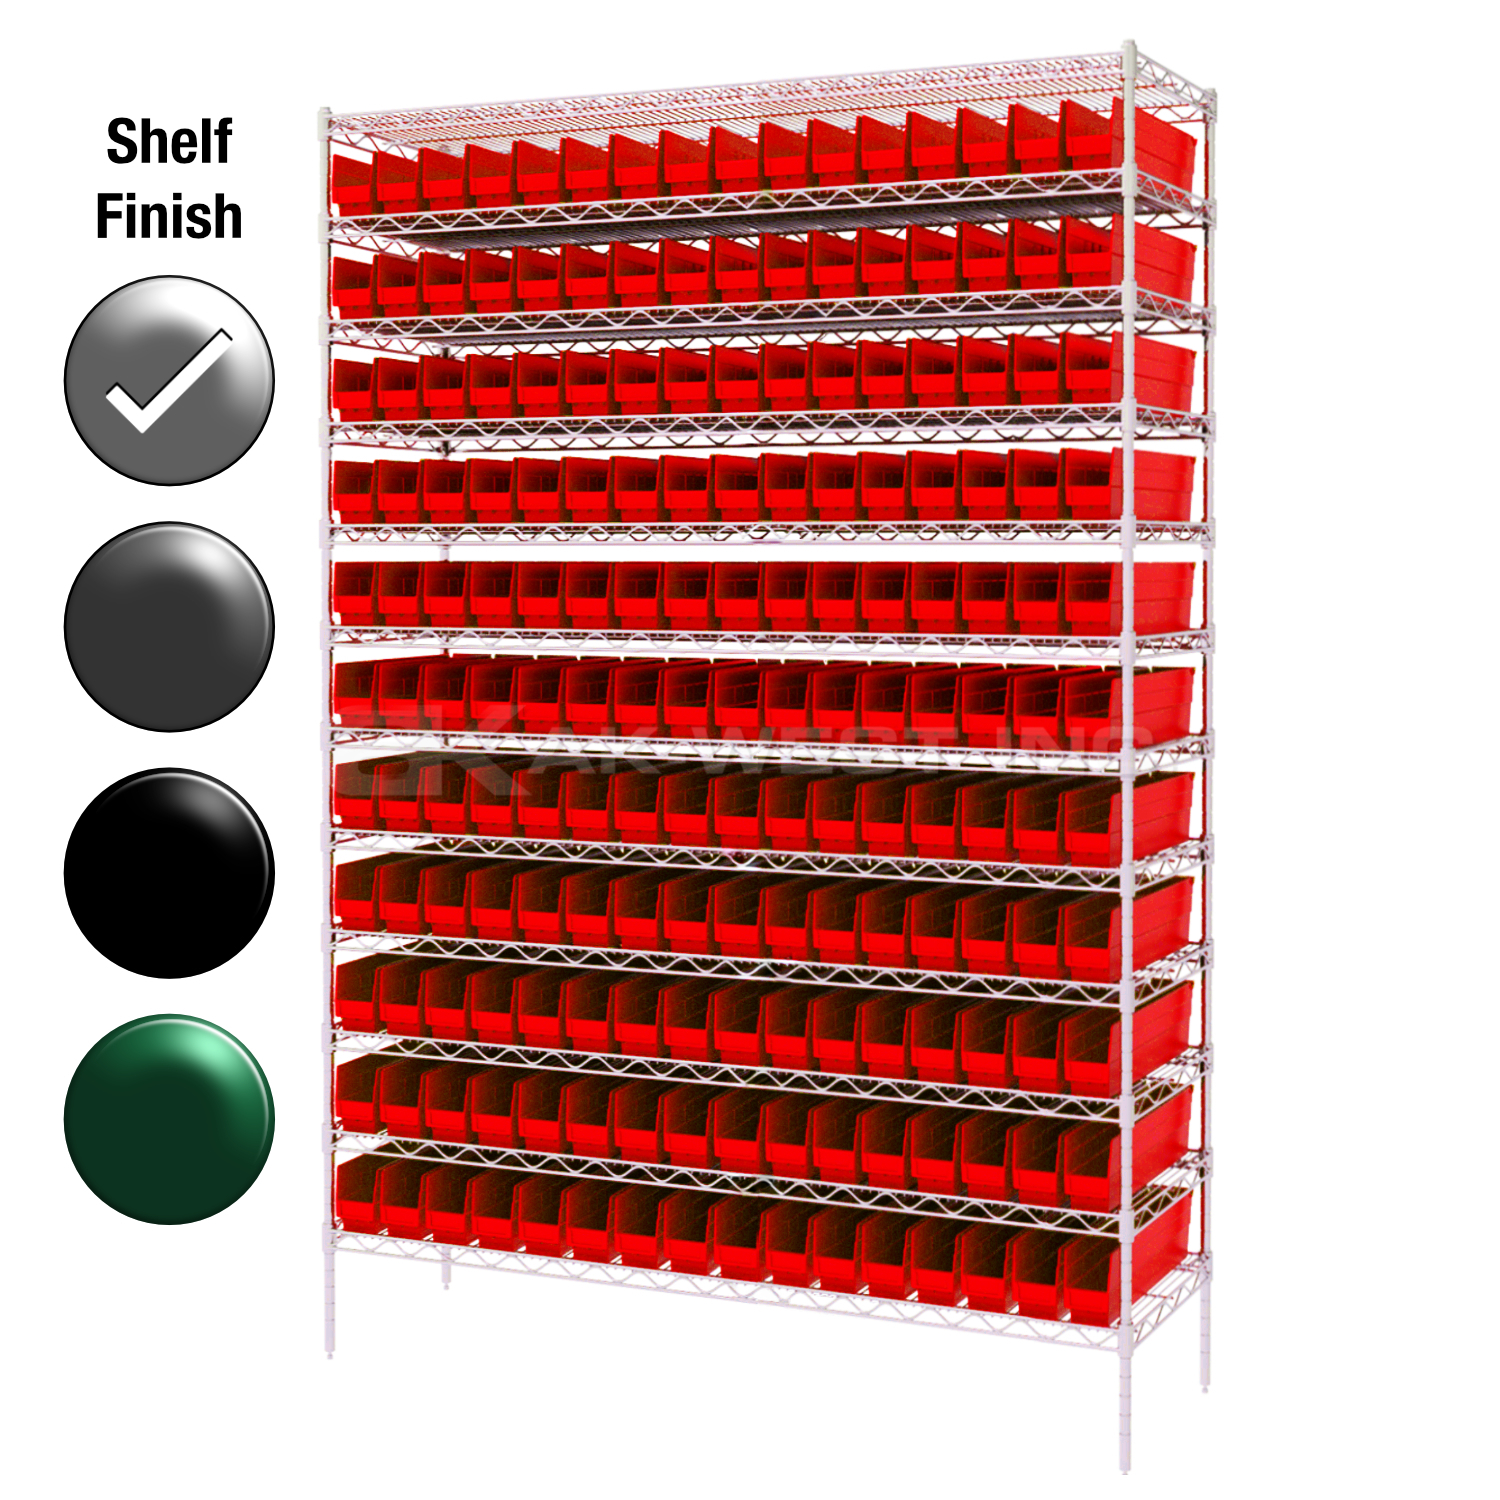 12"D x 48"W x 74"H Chrome Shelf w/ (12) Shelves and (176) 30110s